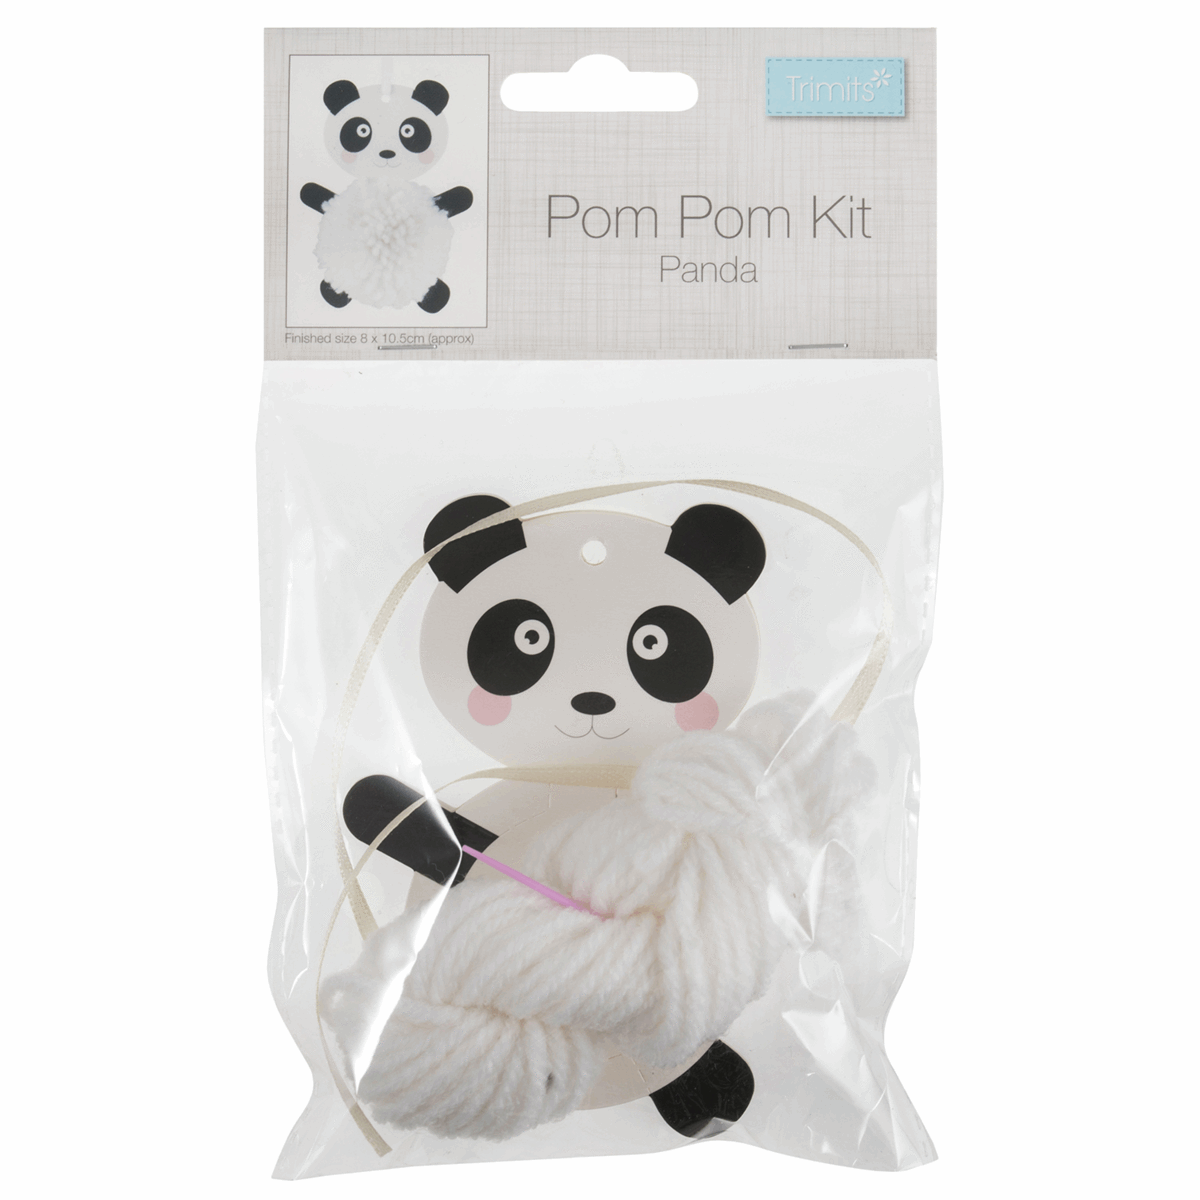 Trimits Pom Pom Decoration Kit - Panda